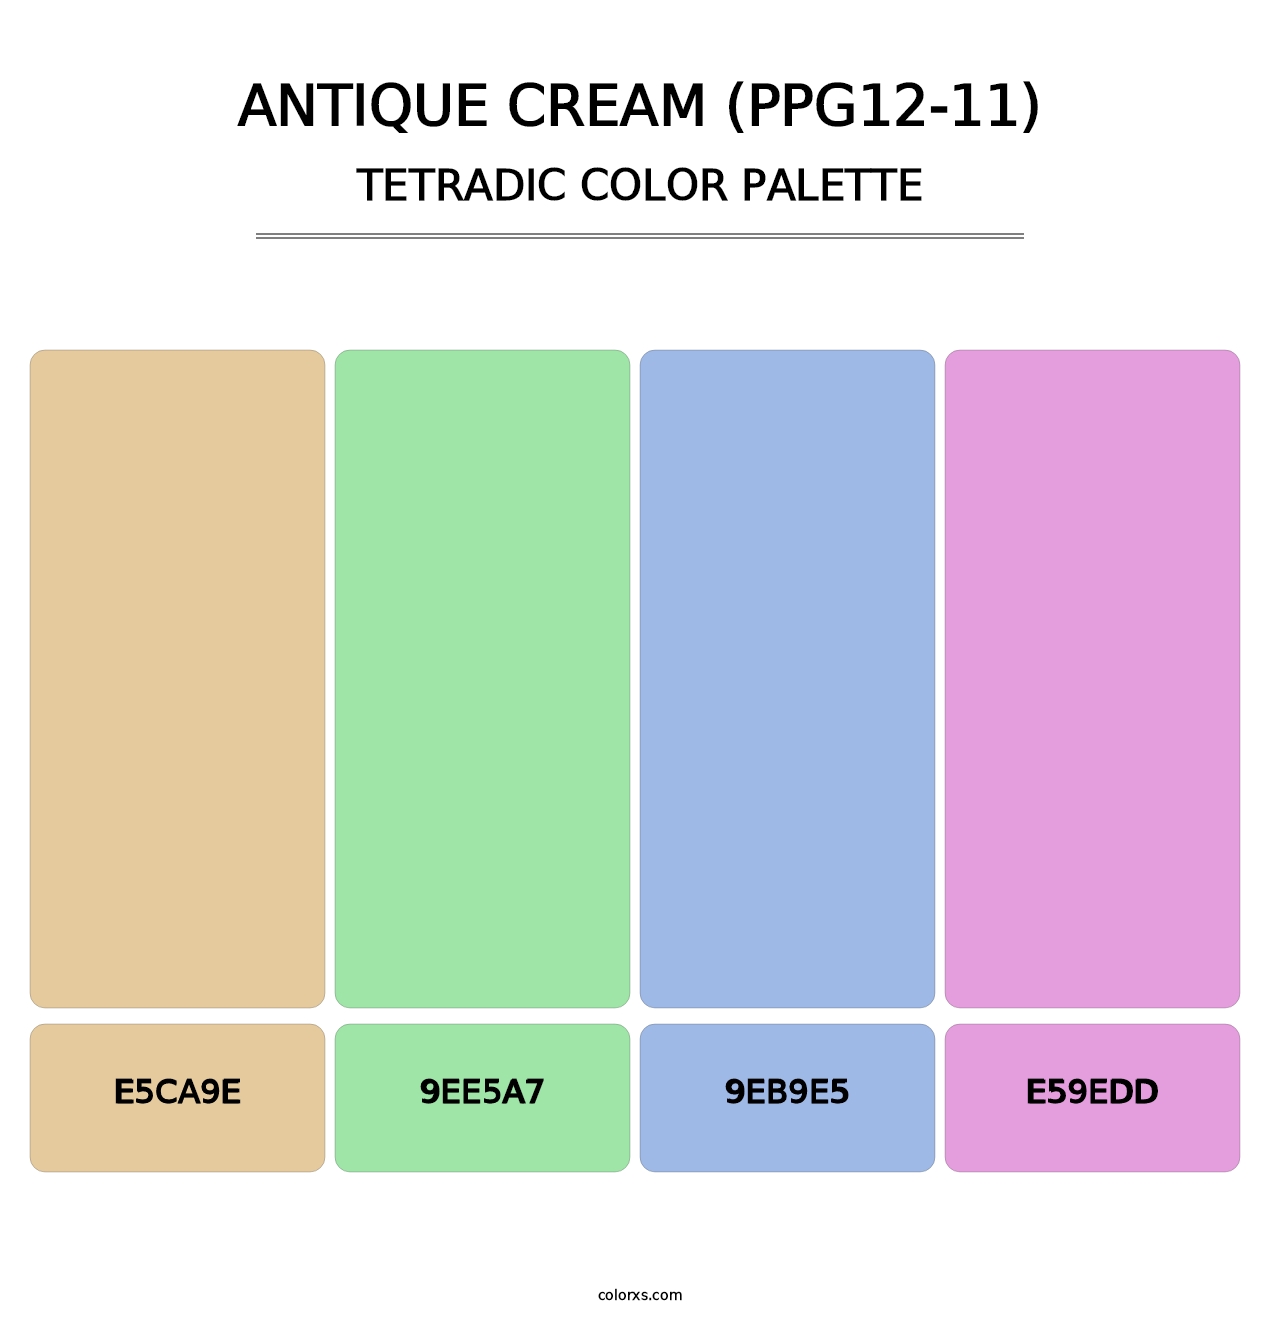 Antique Cream (PPG12-11) - Tetradic Color Palette